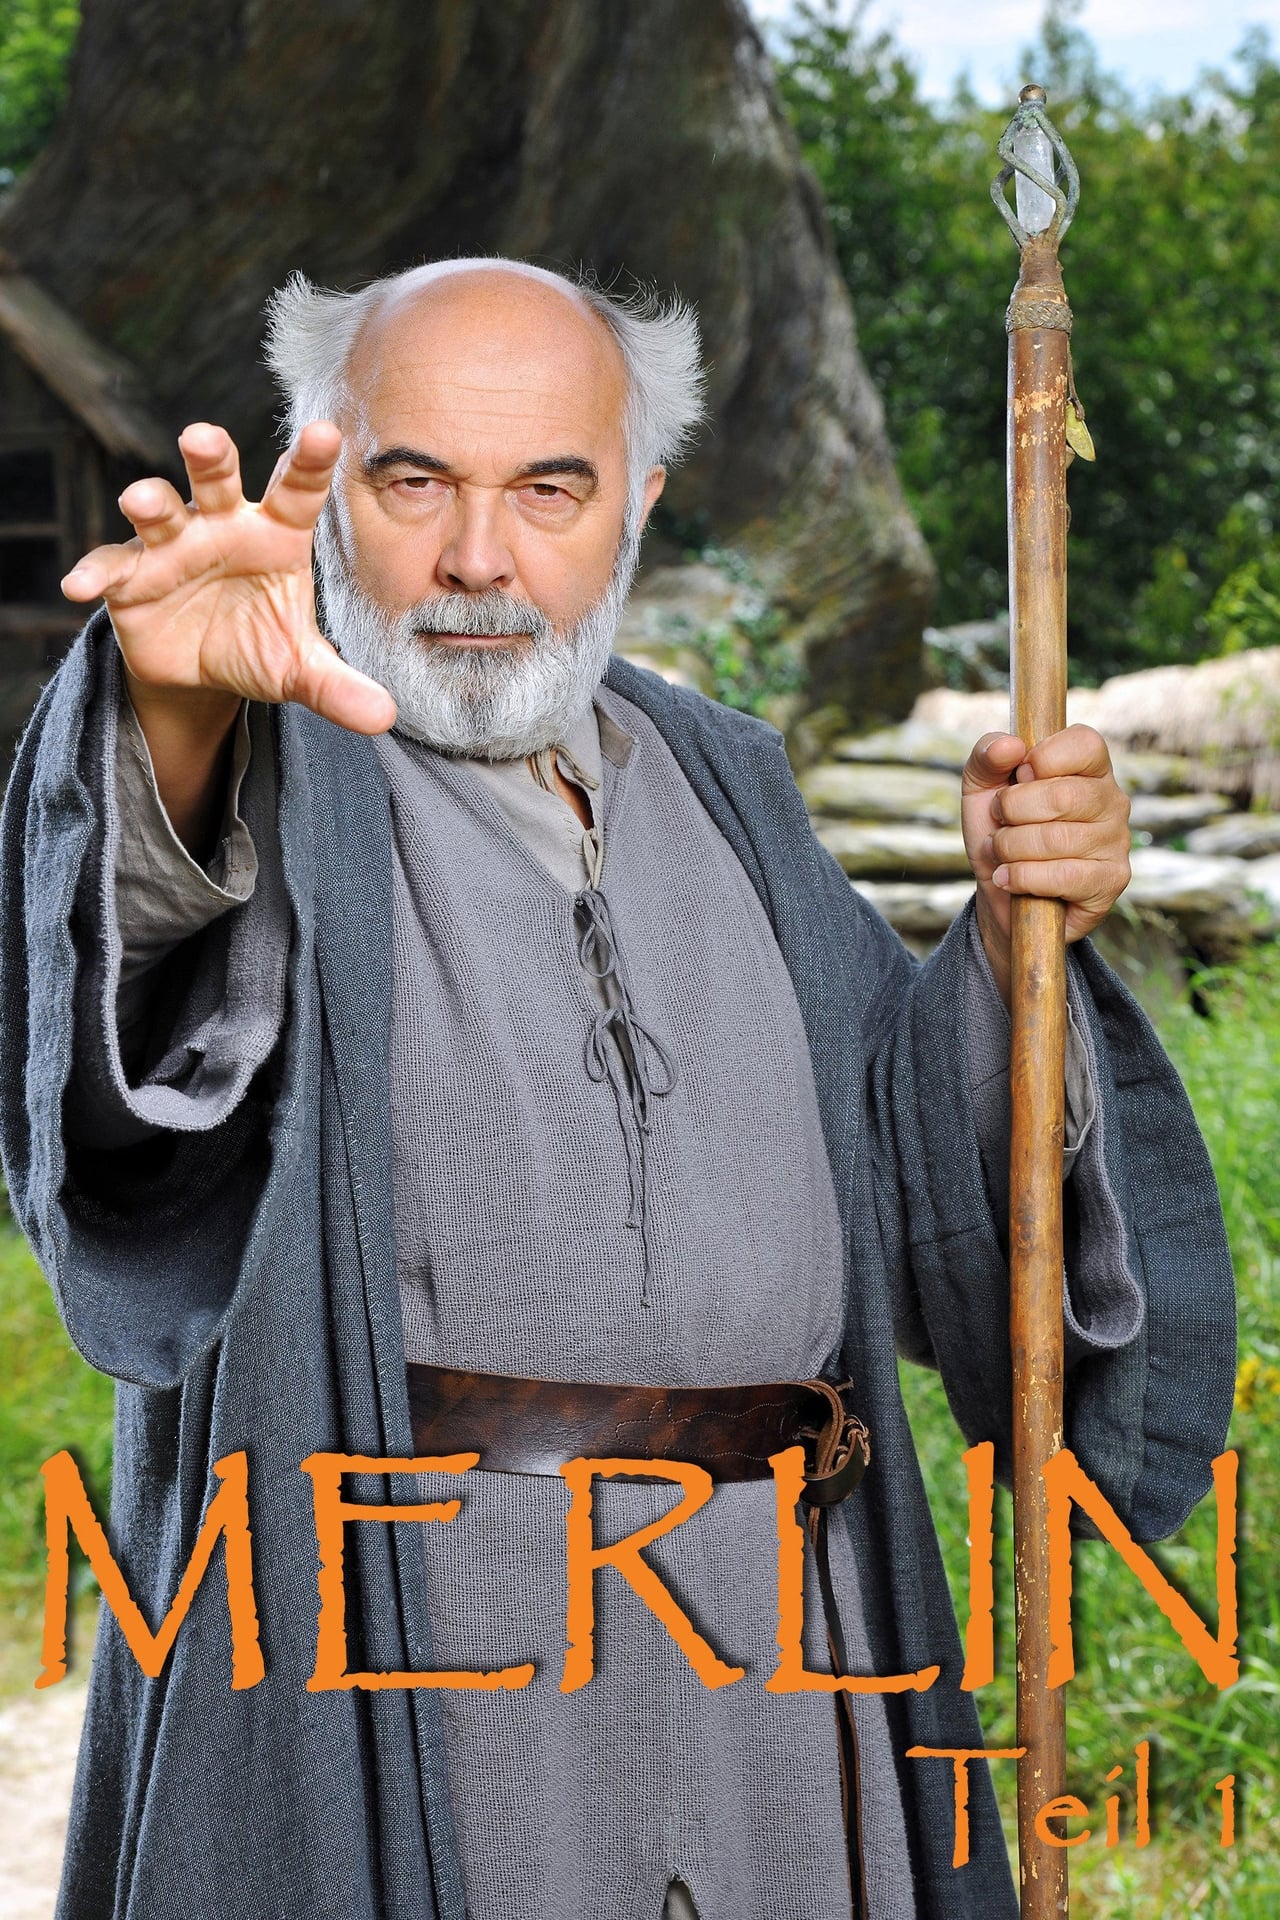 Merlin Season 1